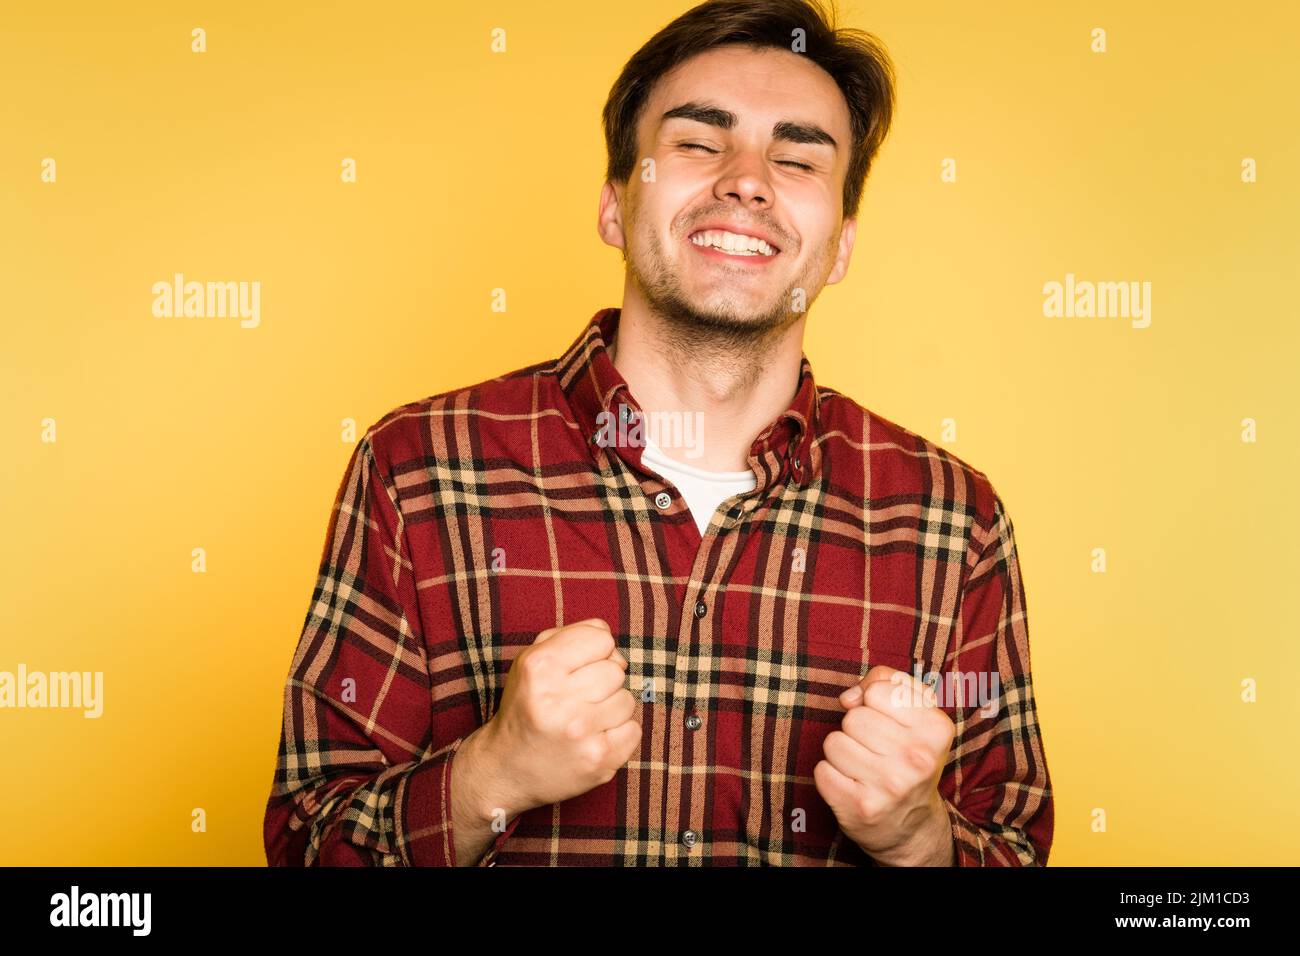 ecstatic happy man celebrating success emotion Stock Photo